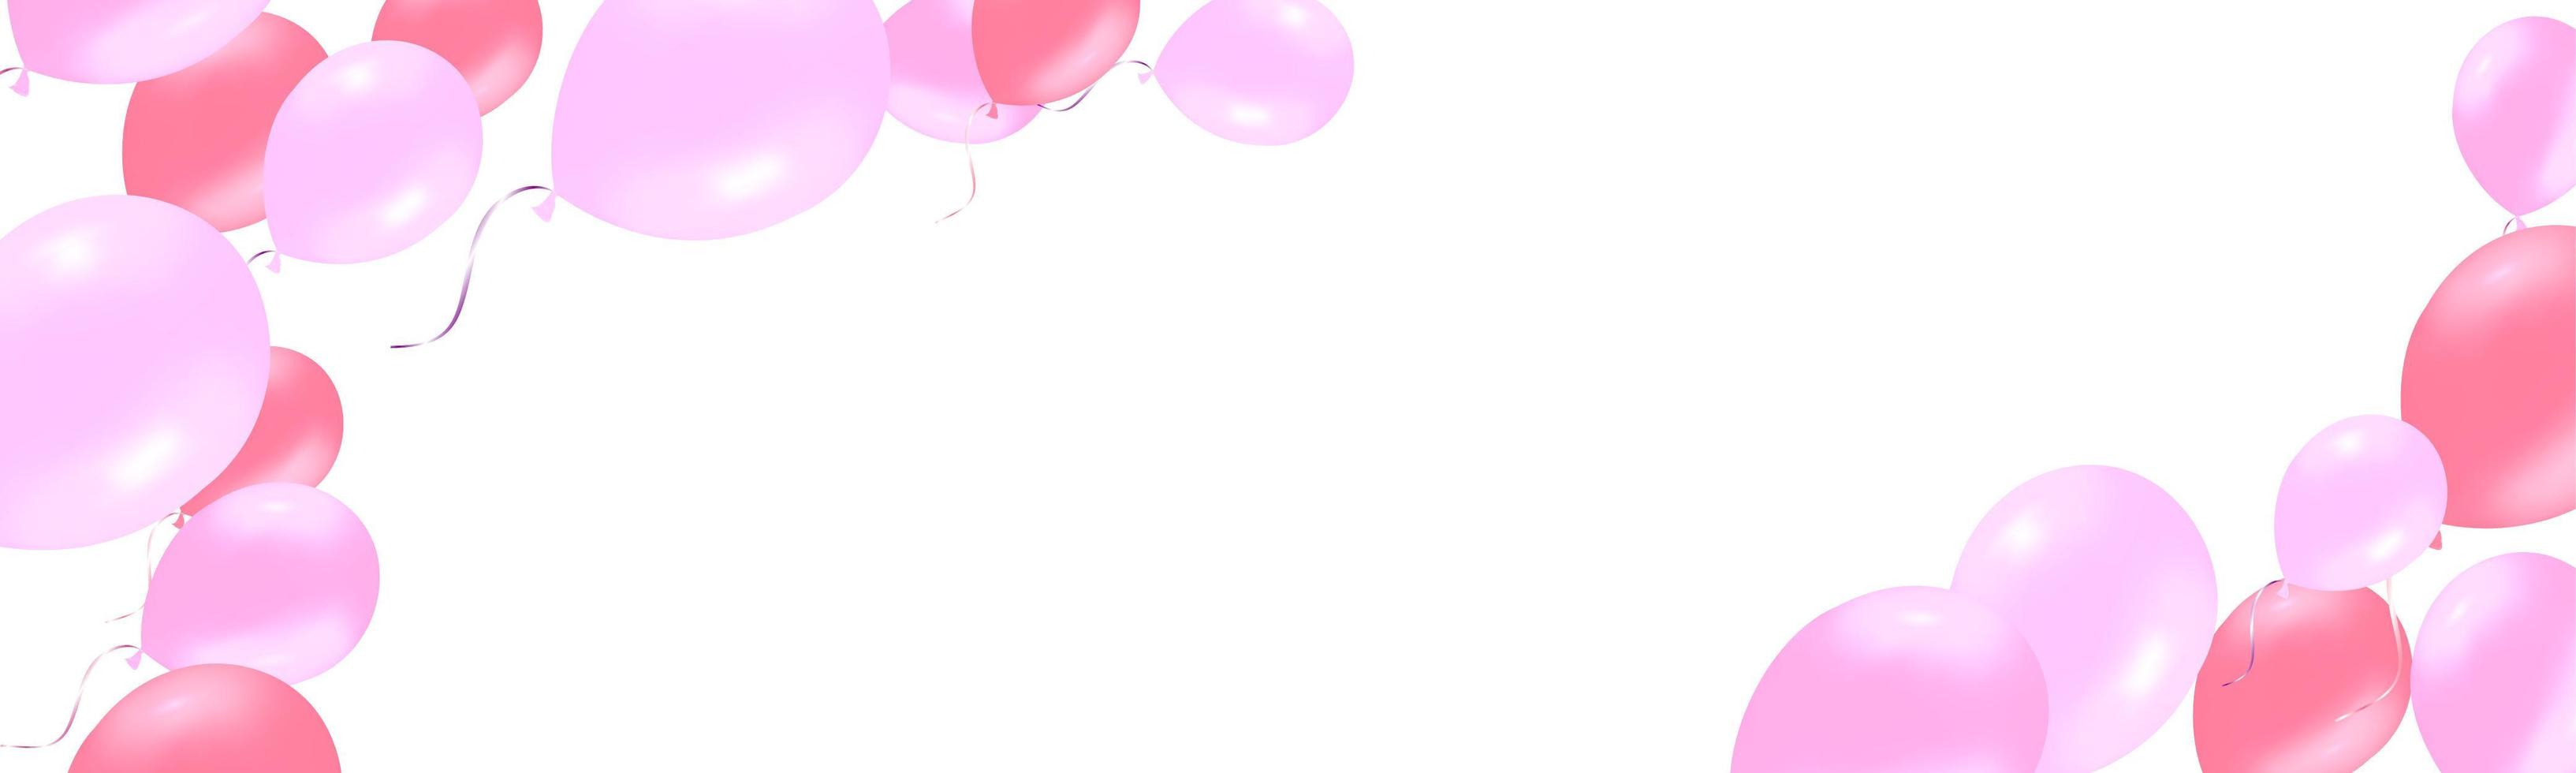 banner horizontal com balões de hélio rosa rosa vetor